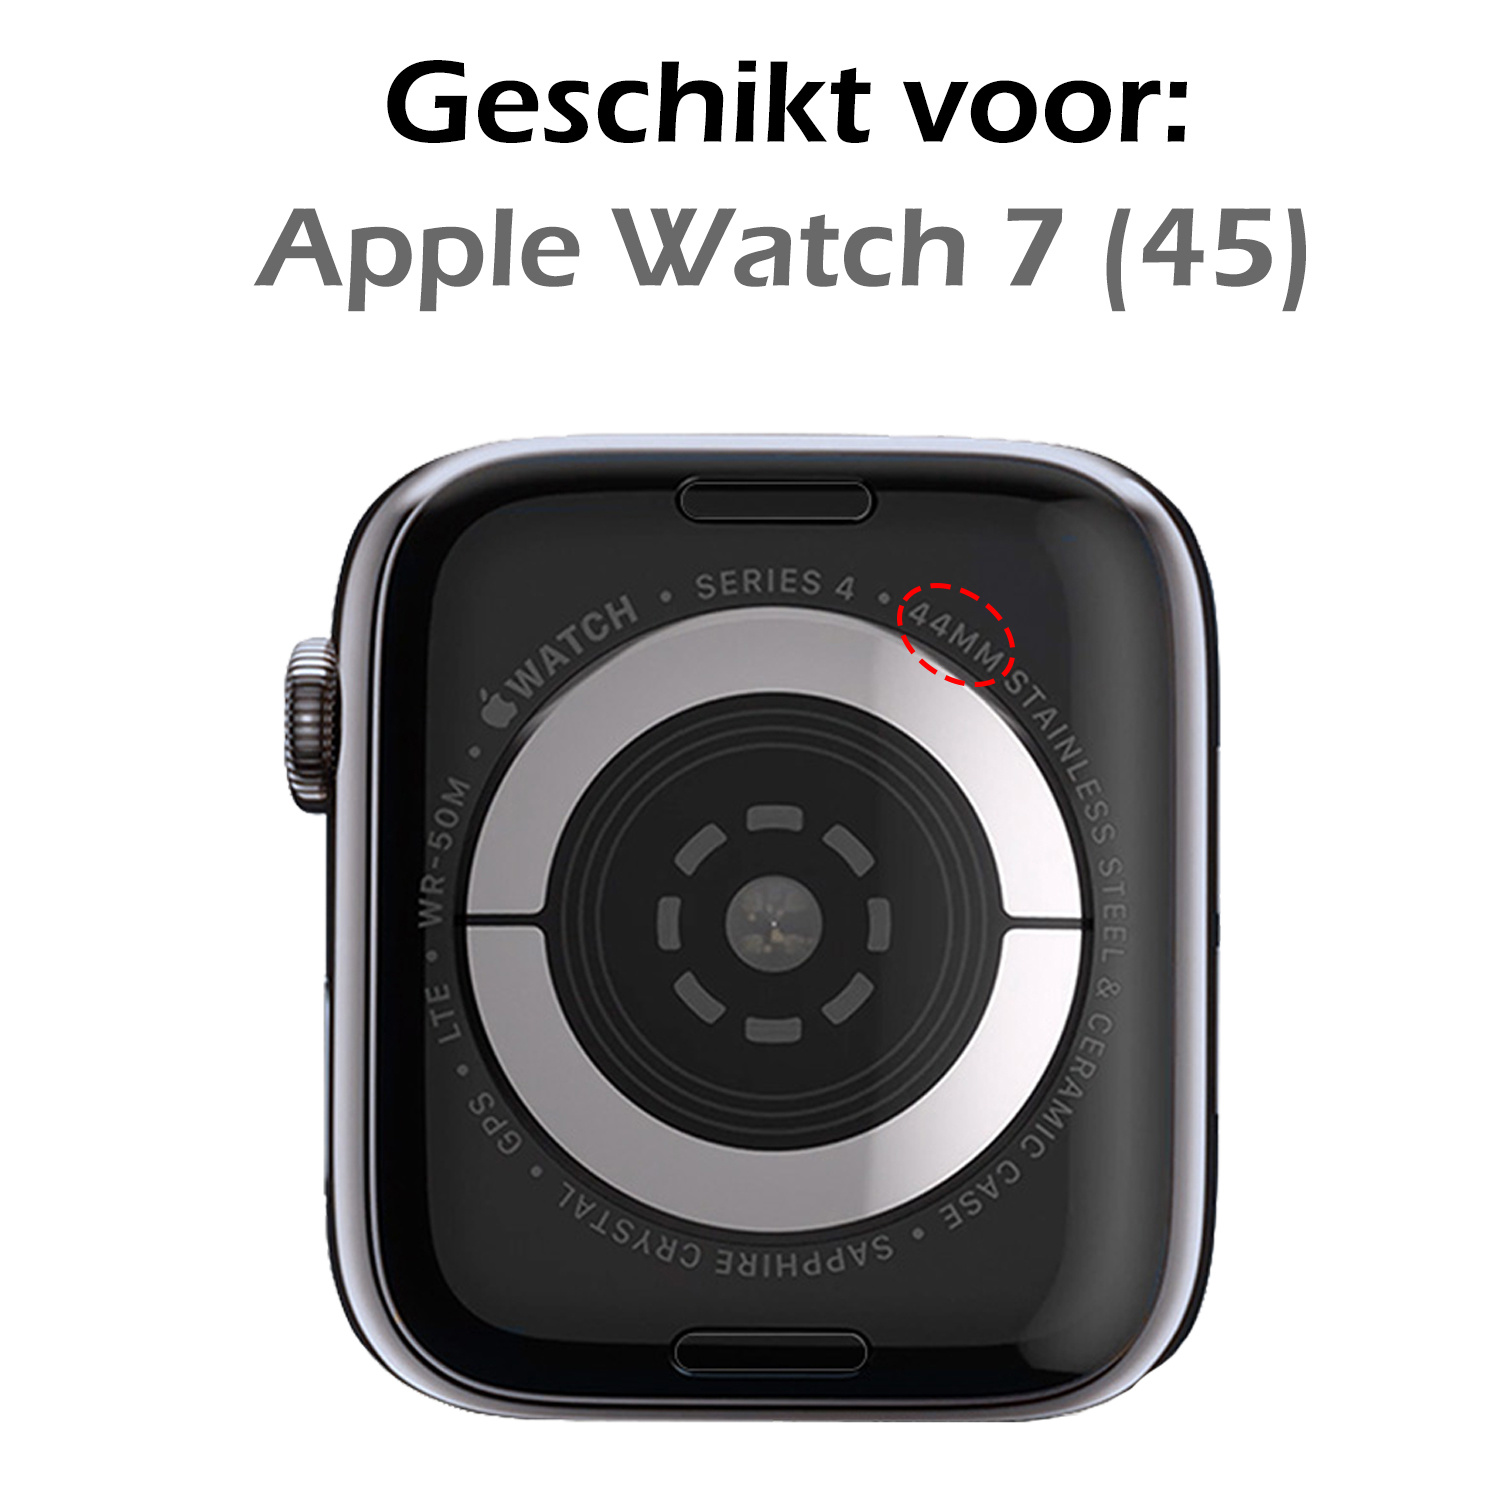 Nomfy Geschikt Voor Apple Watch 7 Bandje Zilver Milanees Horloge Band Voor Apple Watch 7 Band (41) mm - Zwart x Zilver